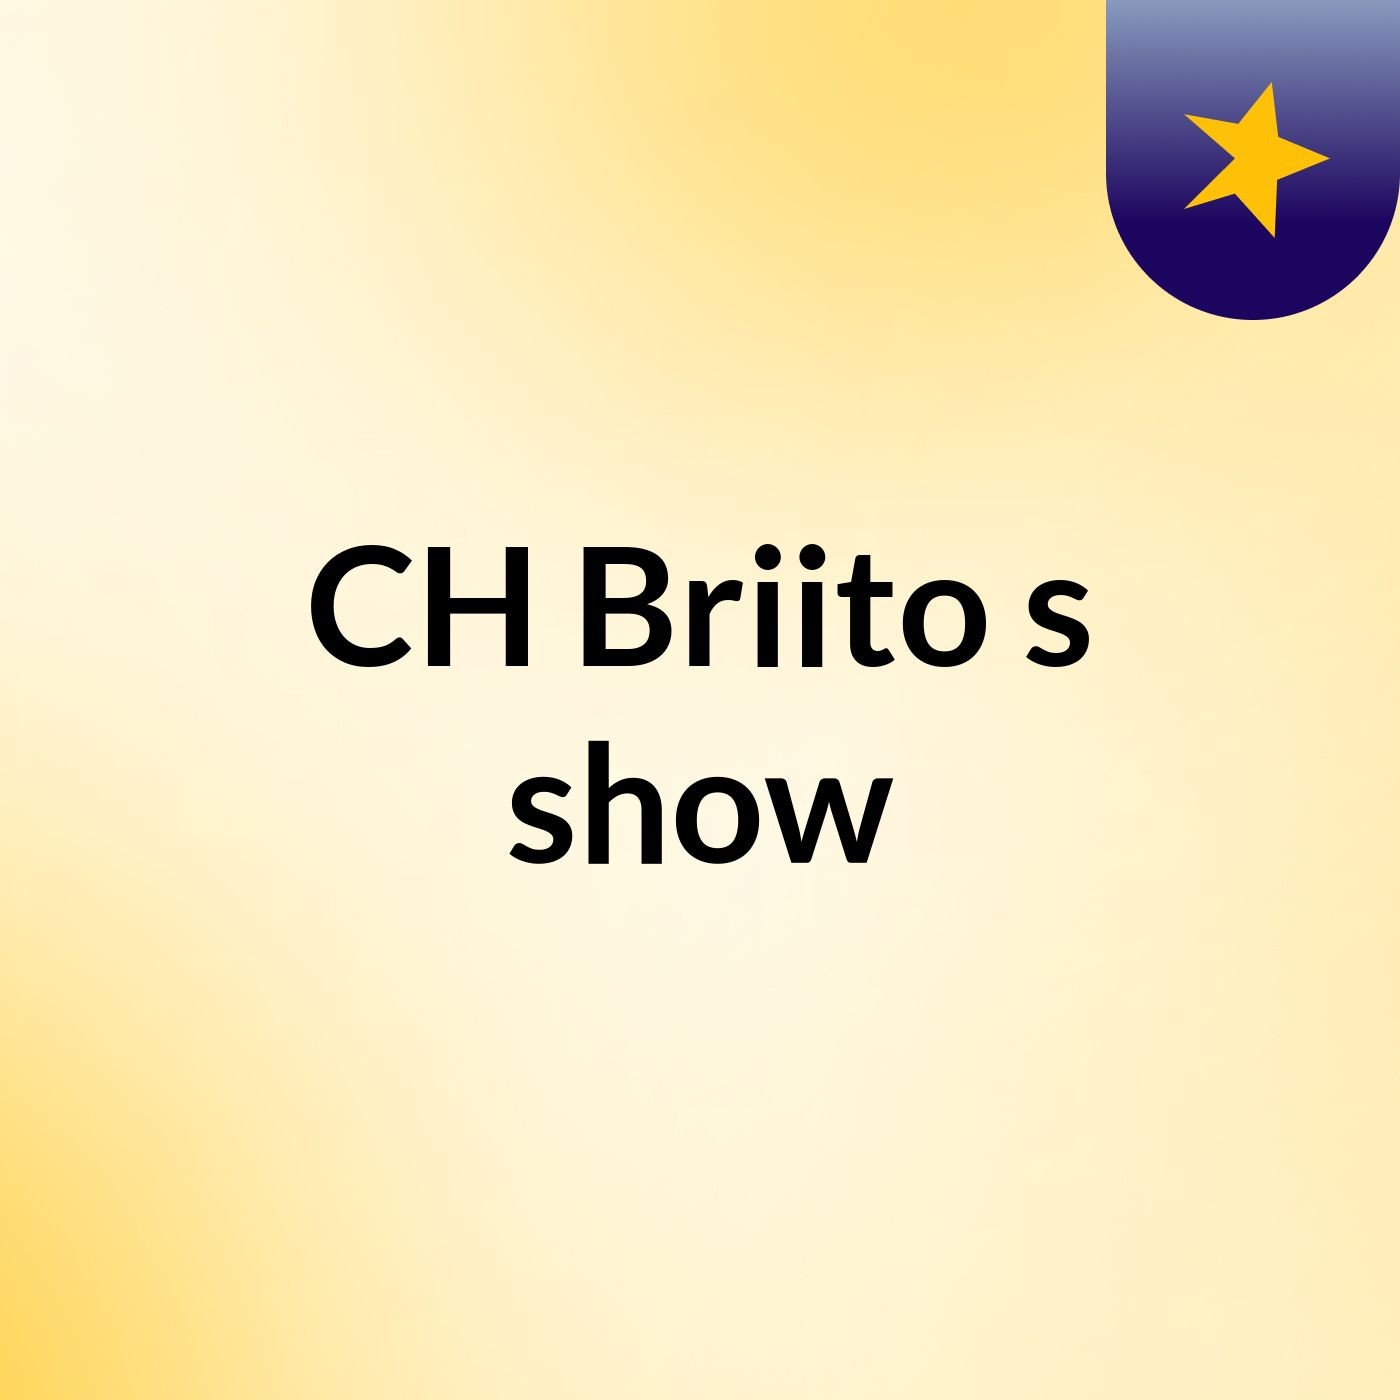 CH Briito's show